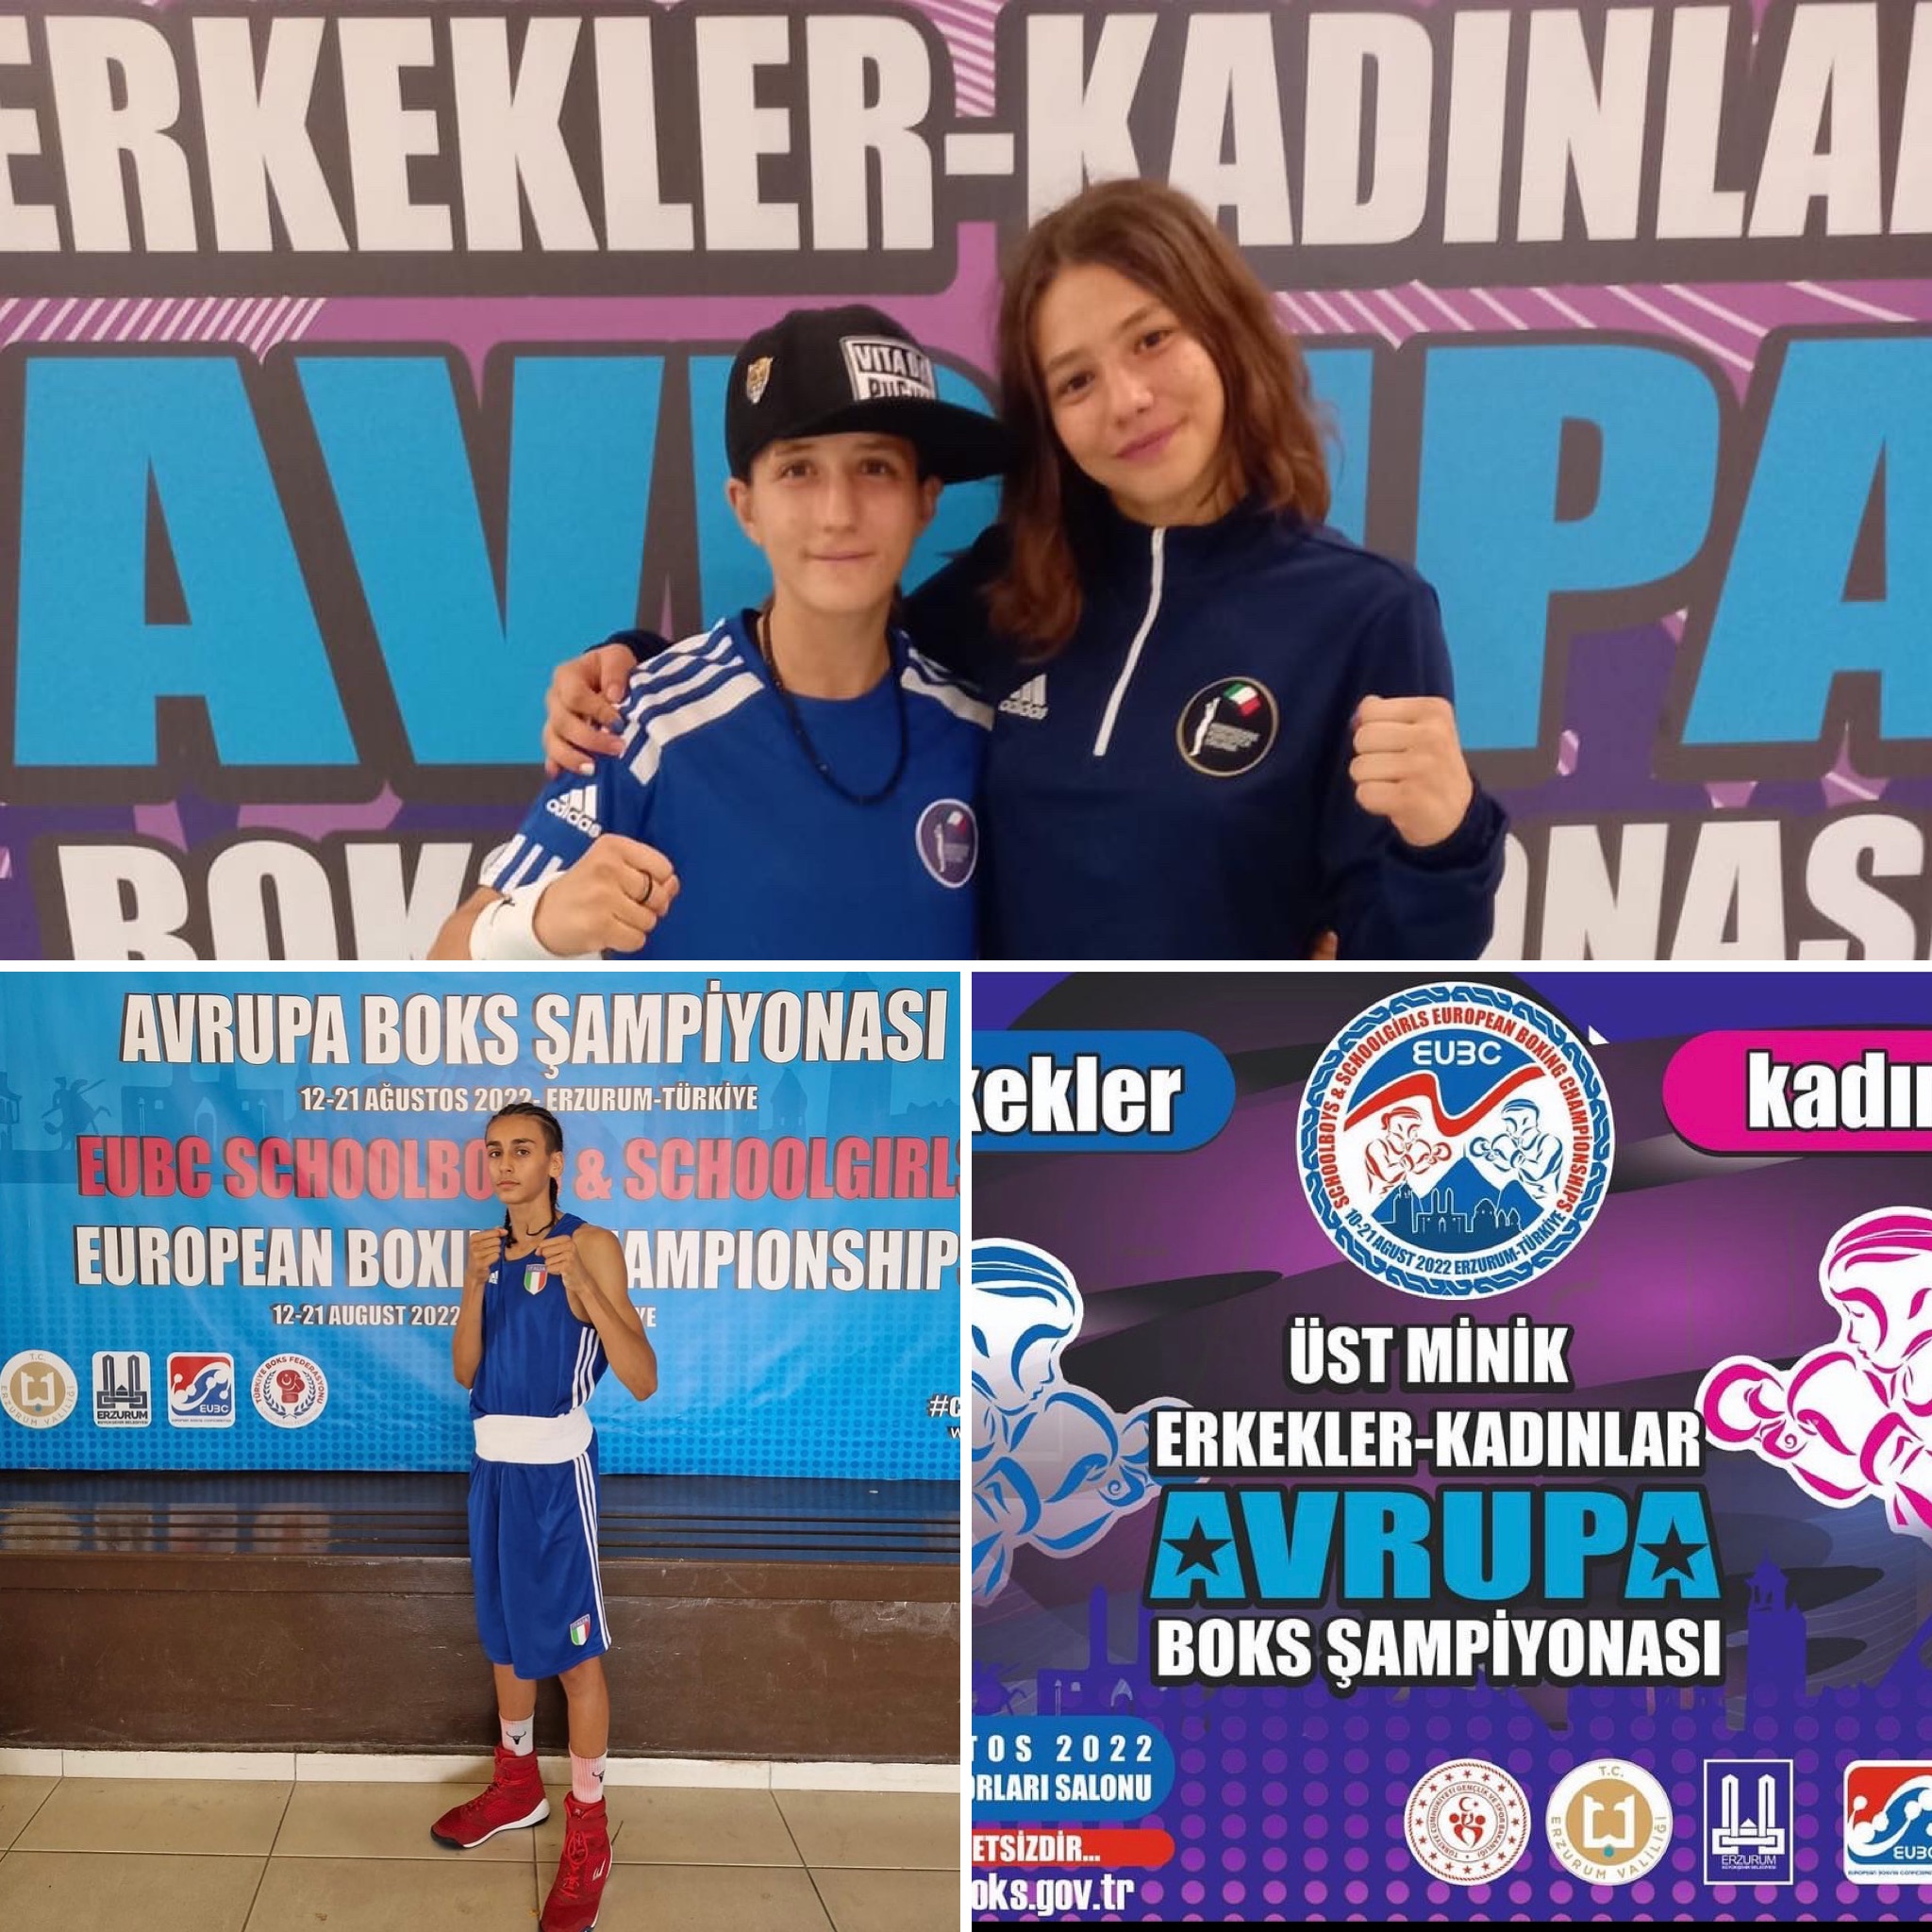 Europei SchoolBoy/Girl Erzurum 2022 - 2 Azzurrine e 1 Azzurrino nelle finali del 20/8, Itaboxing già a quota 5 bronzi